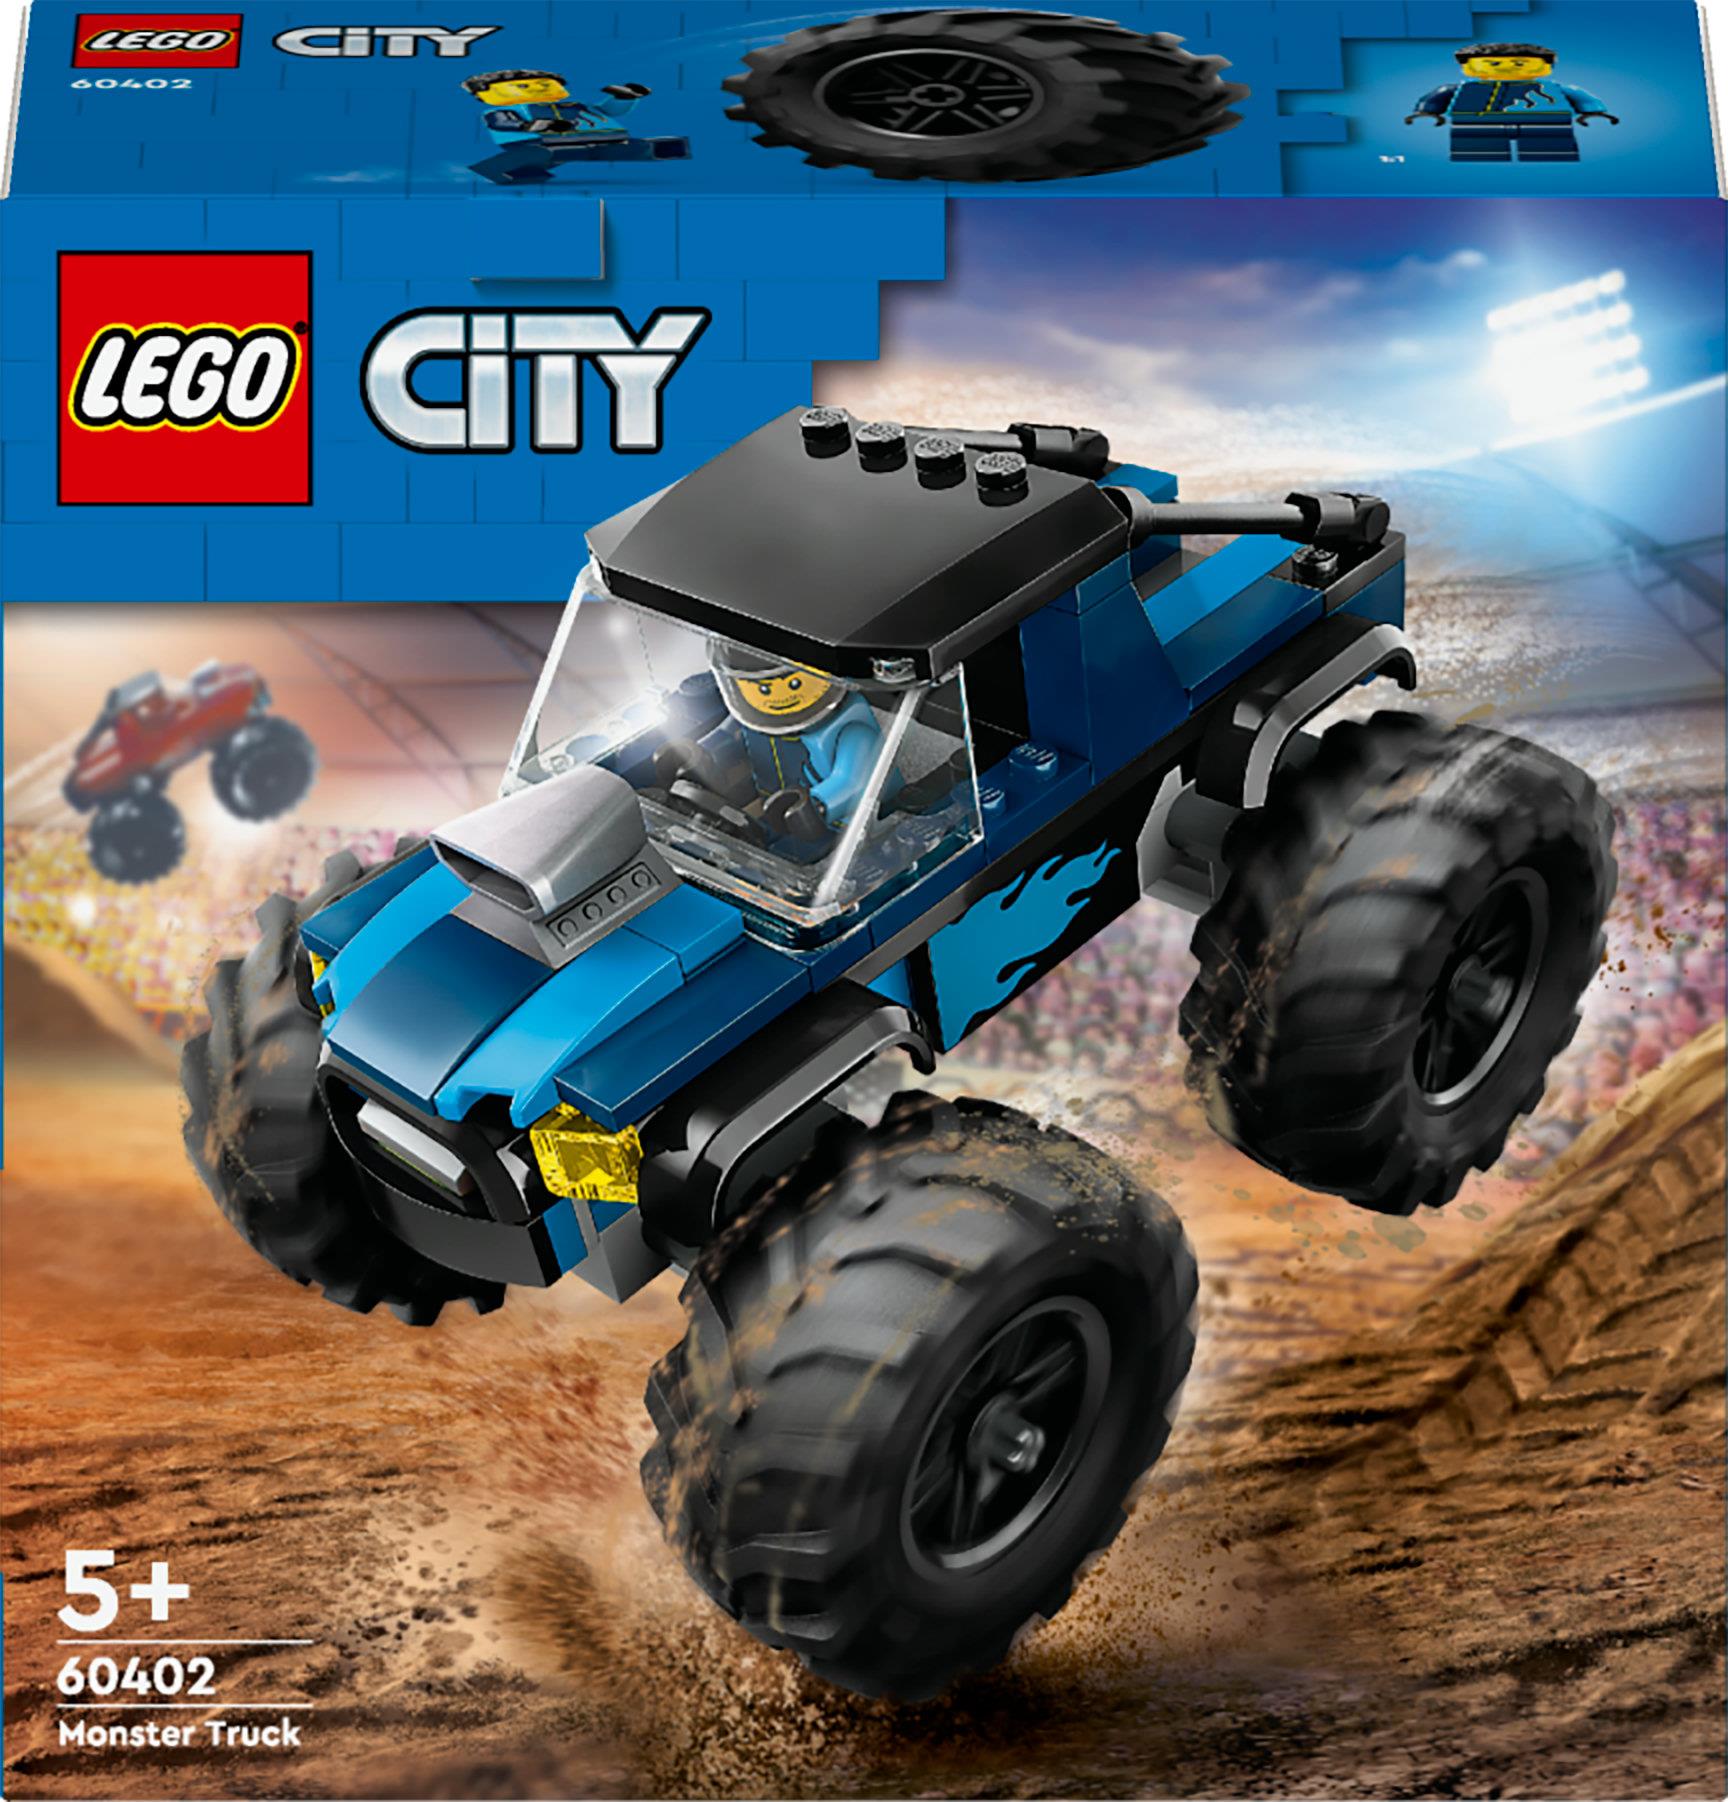 LEGO City 60402 Monster